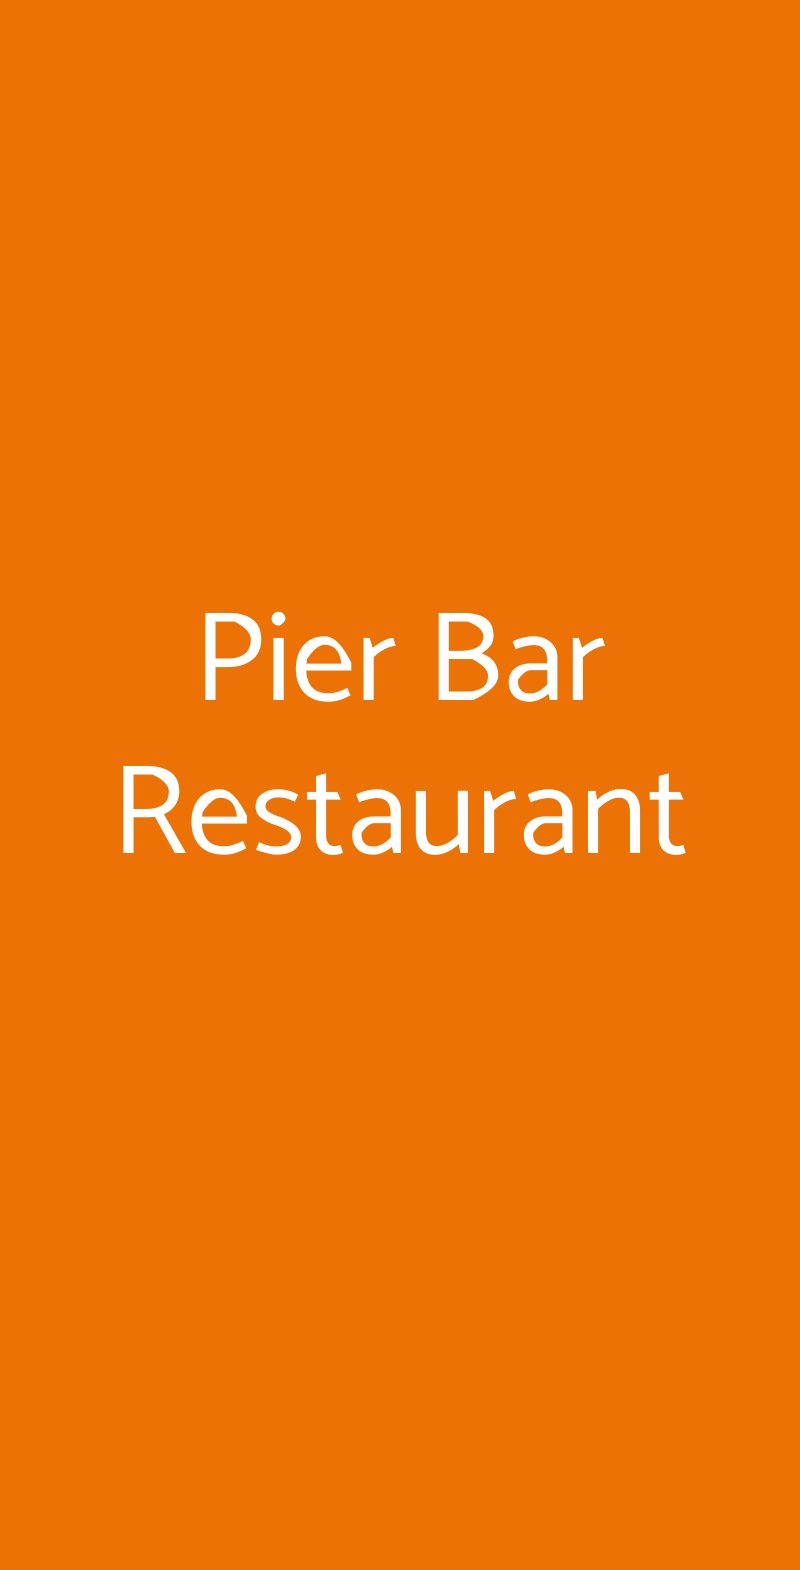 Pier Bar Restaurant Terrasini menù 1 pagina